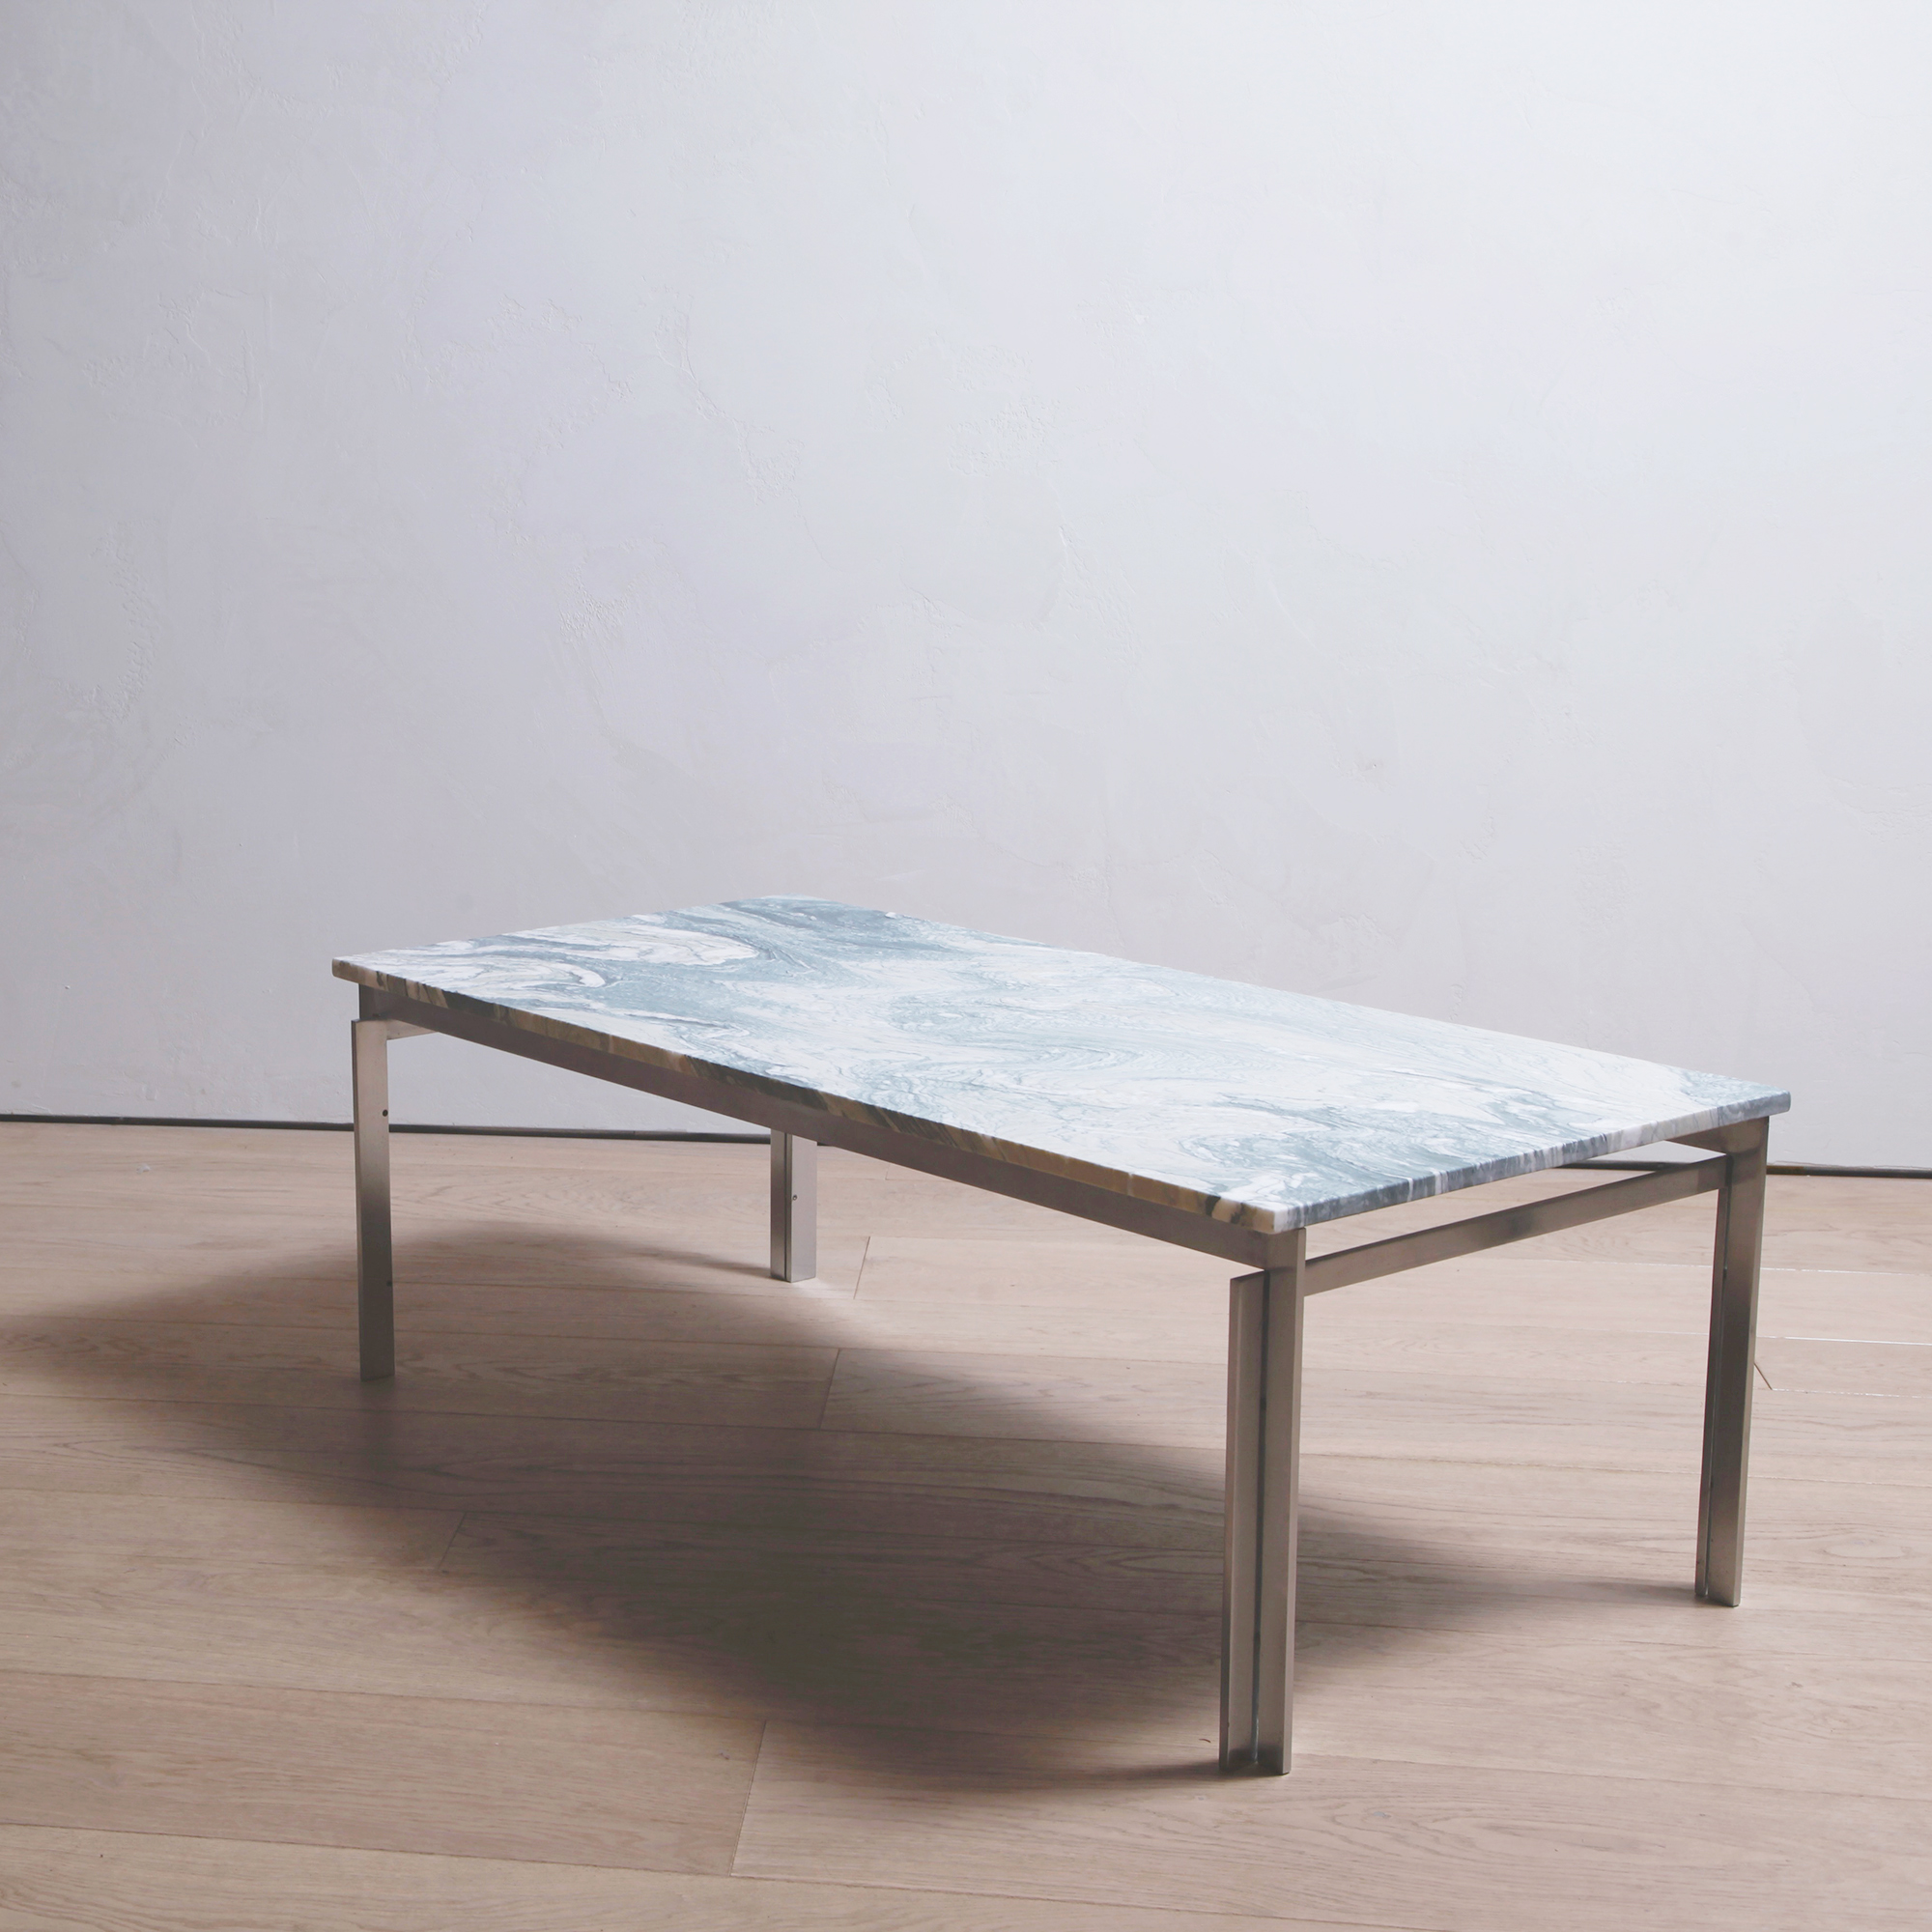 PK-57 Table by Poul Kjaerholm